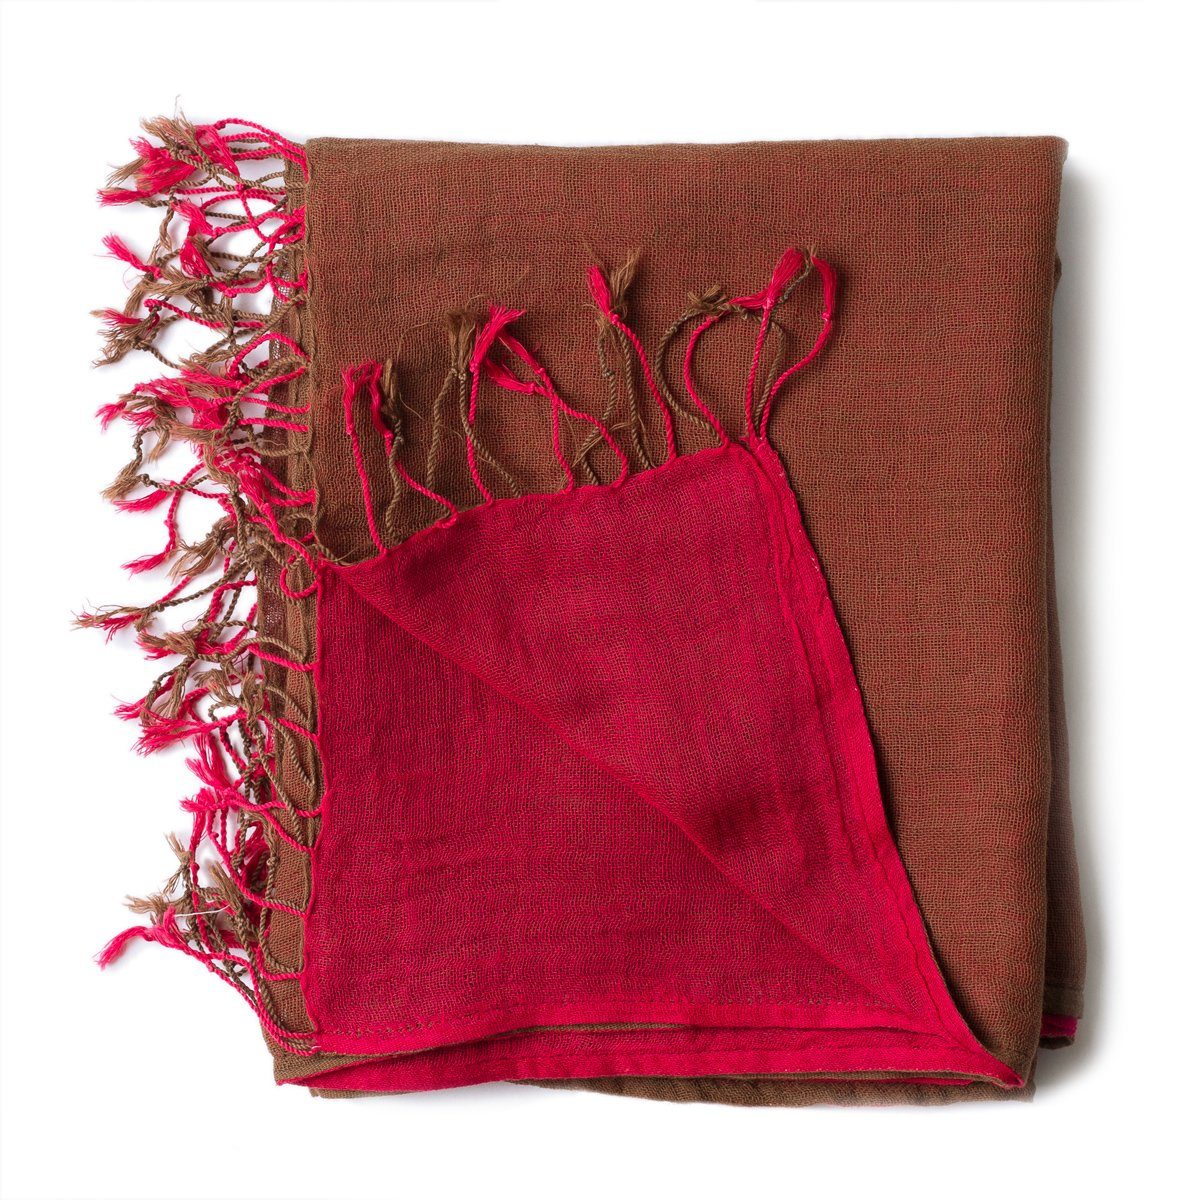 PANASIAM Halstuch elegantes Schultertuch zweifarbig auch als Schal oder Stola tragbar, in schönen farbigen Designs mit kleinen Fransen aus Baumwolle